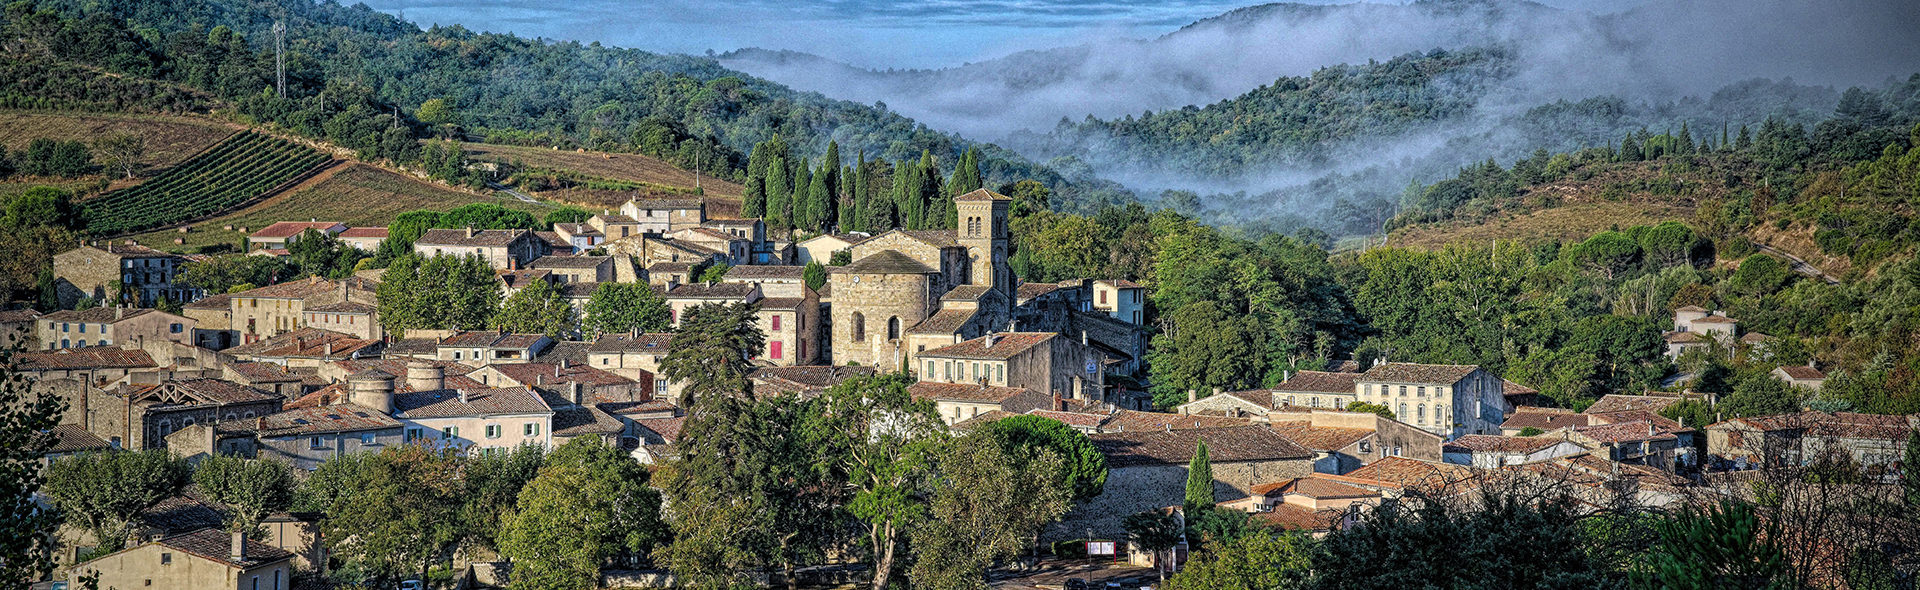 Le village de Saint-Hilaire dans l'Aude (11)